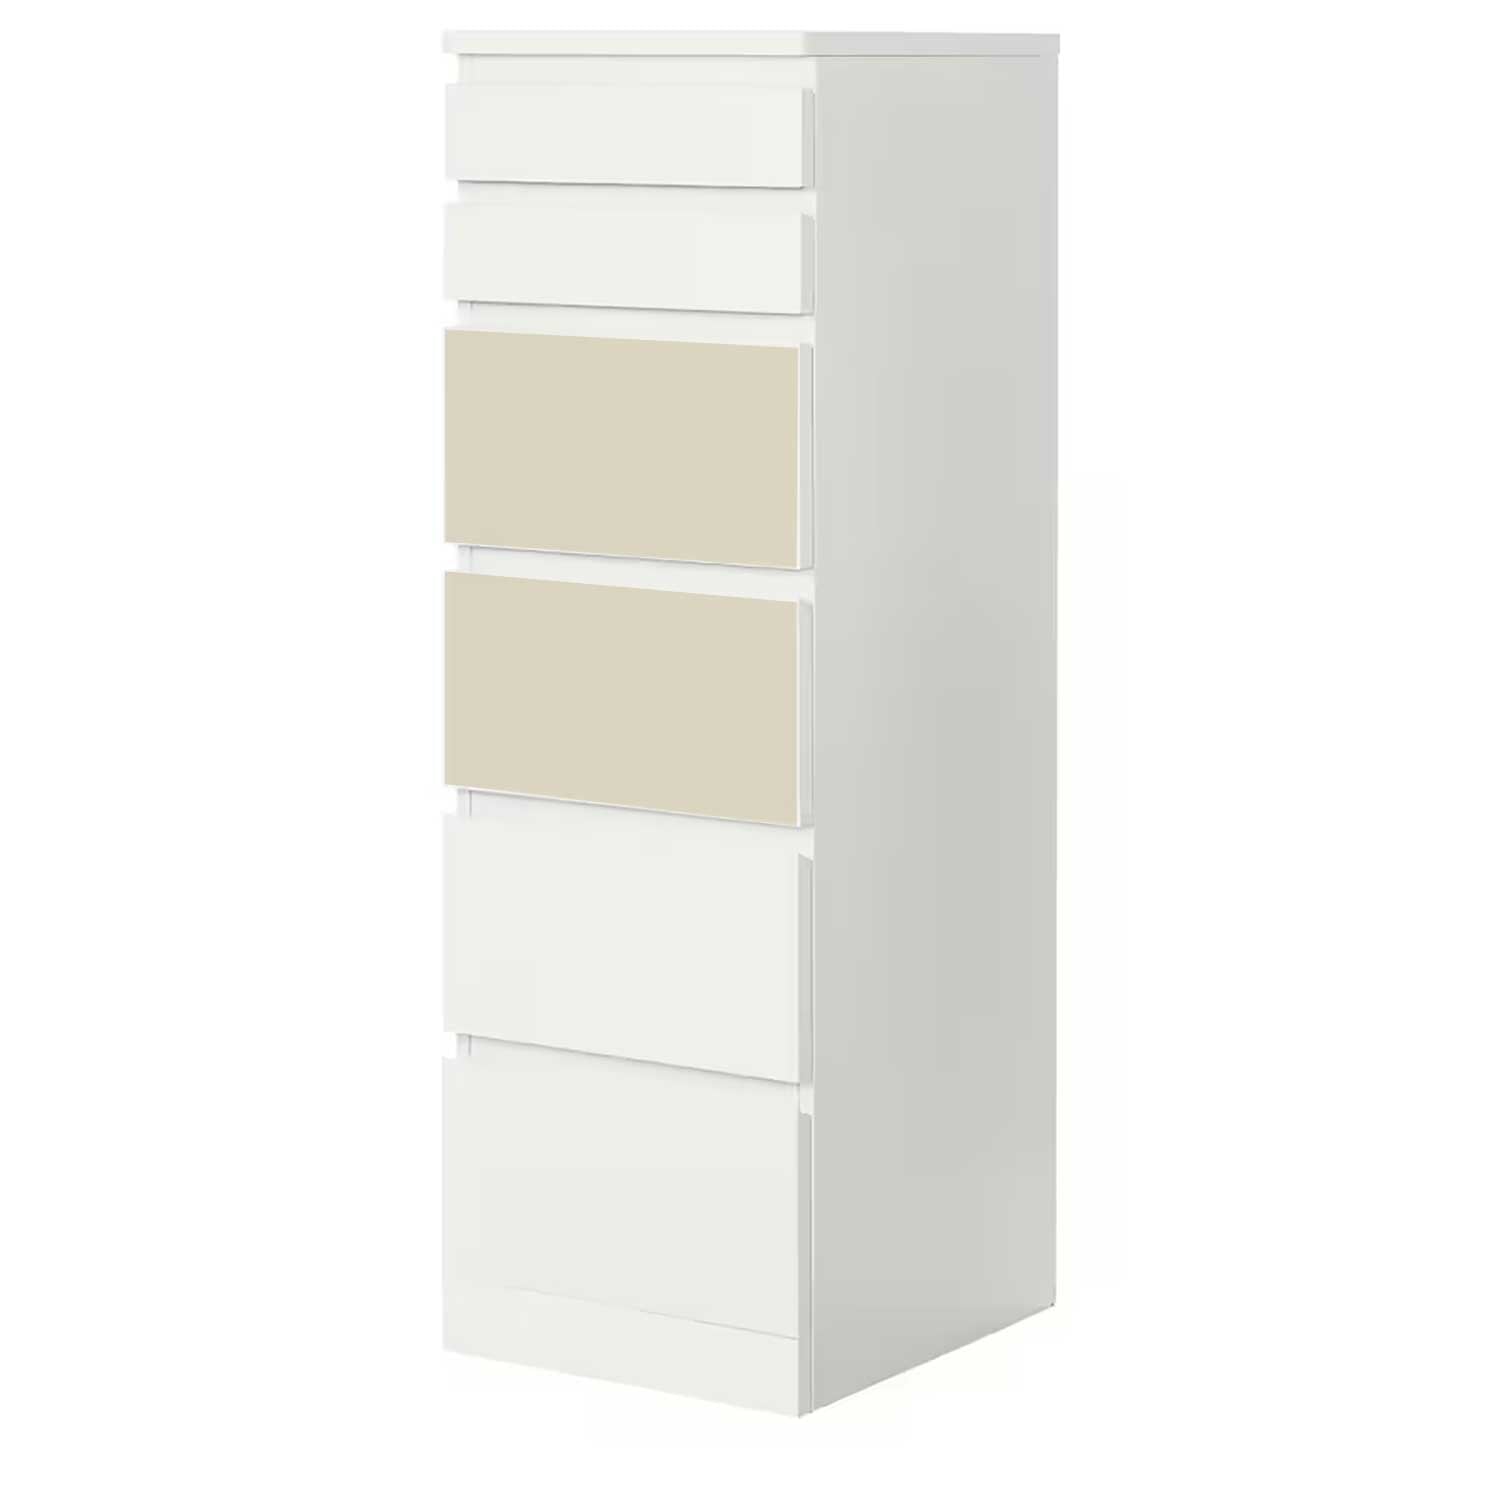 Möbelfolie für IKEA MALM Kommode 6-Schubladen 40x123 cm 'Uni-Colors'